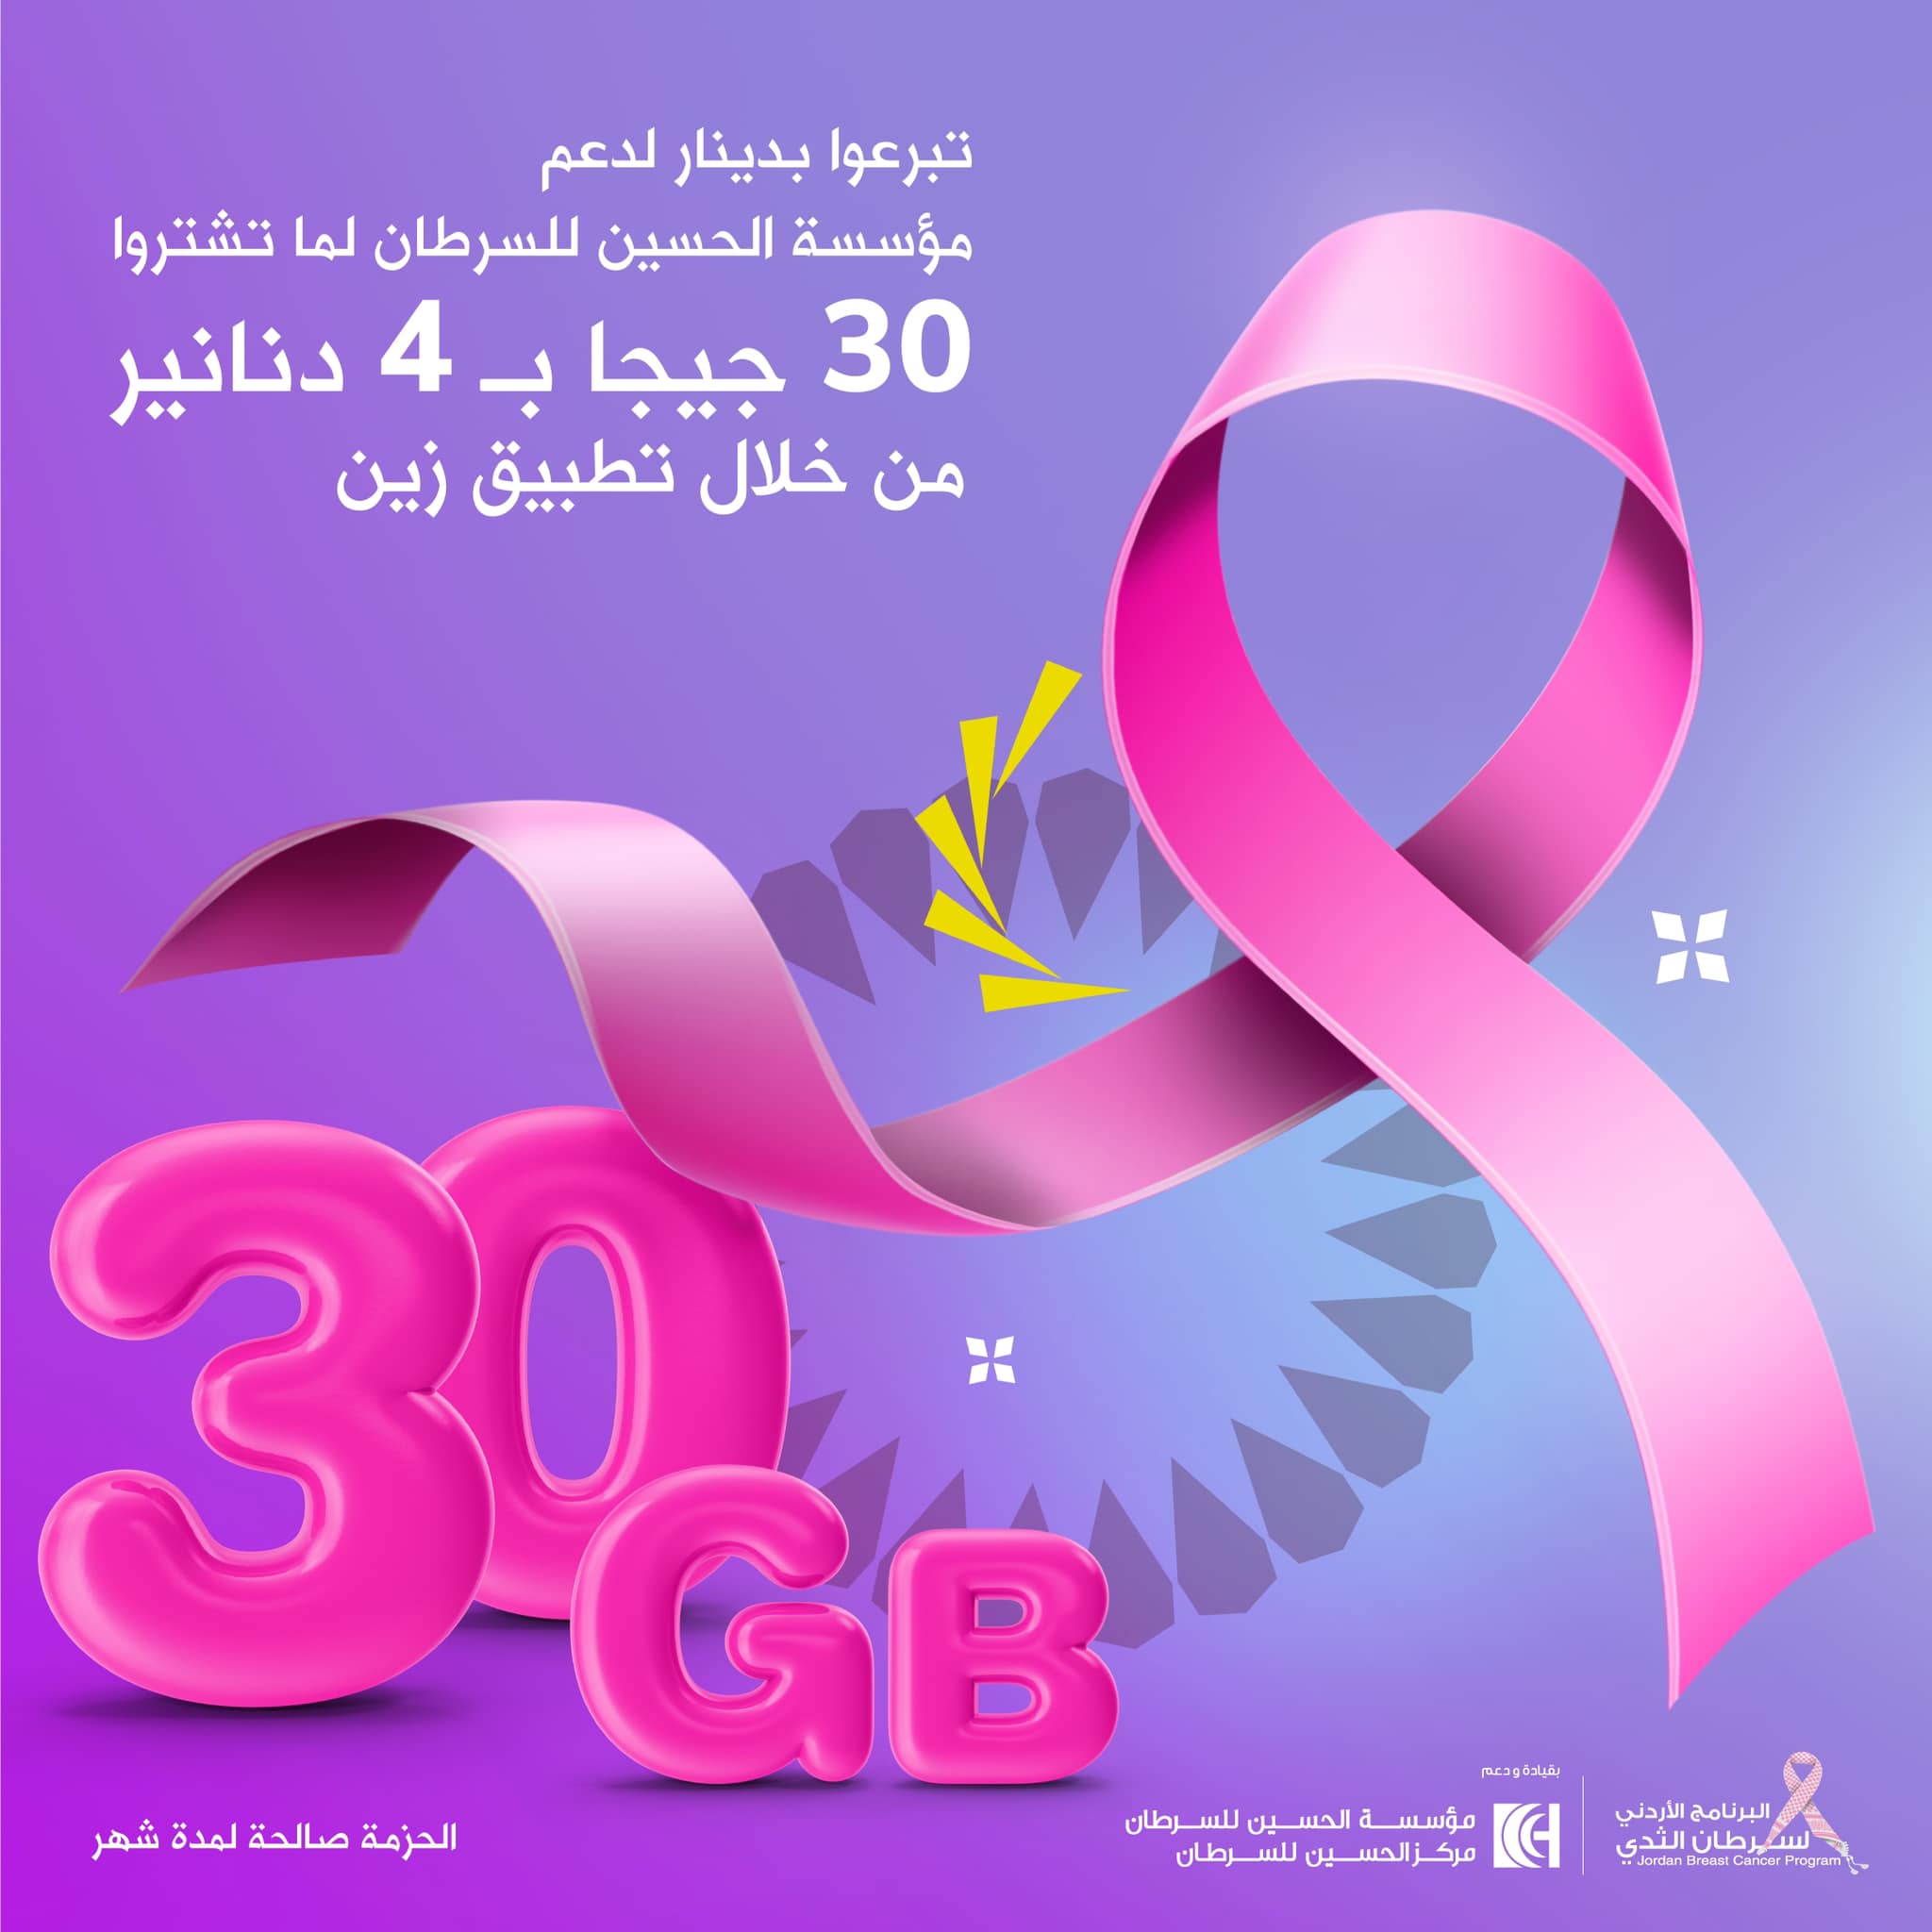 حزمة إنترنت من زين دعماً لمؤسسة الحسين للسرطان بالتزامن مع شهر التوعية بسرطان الثدي